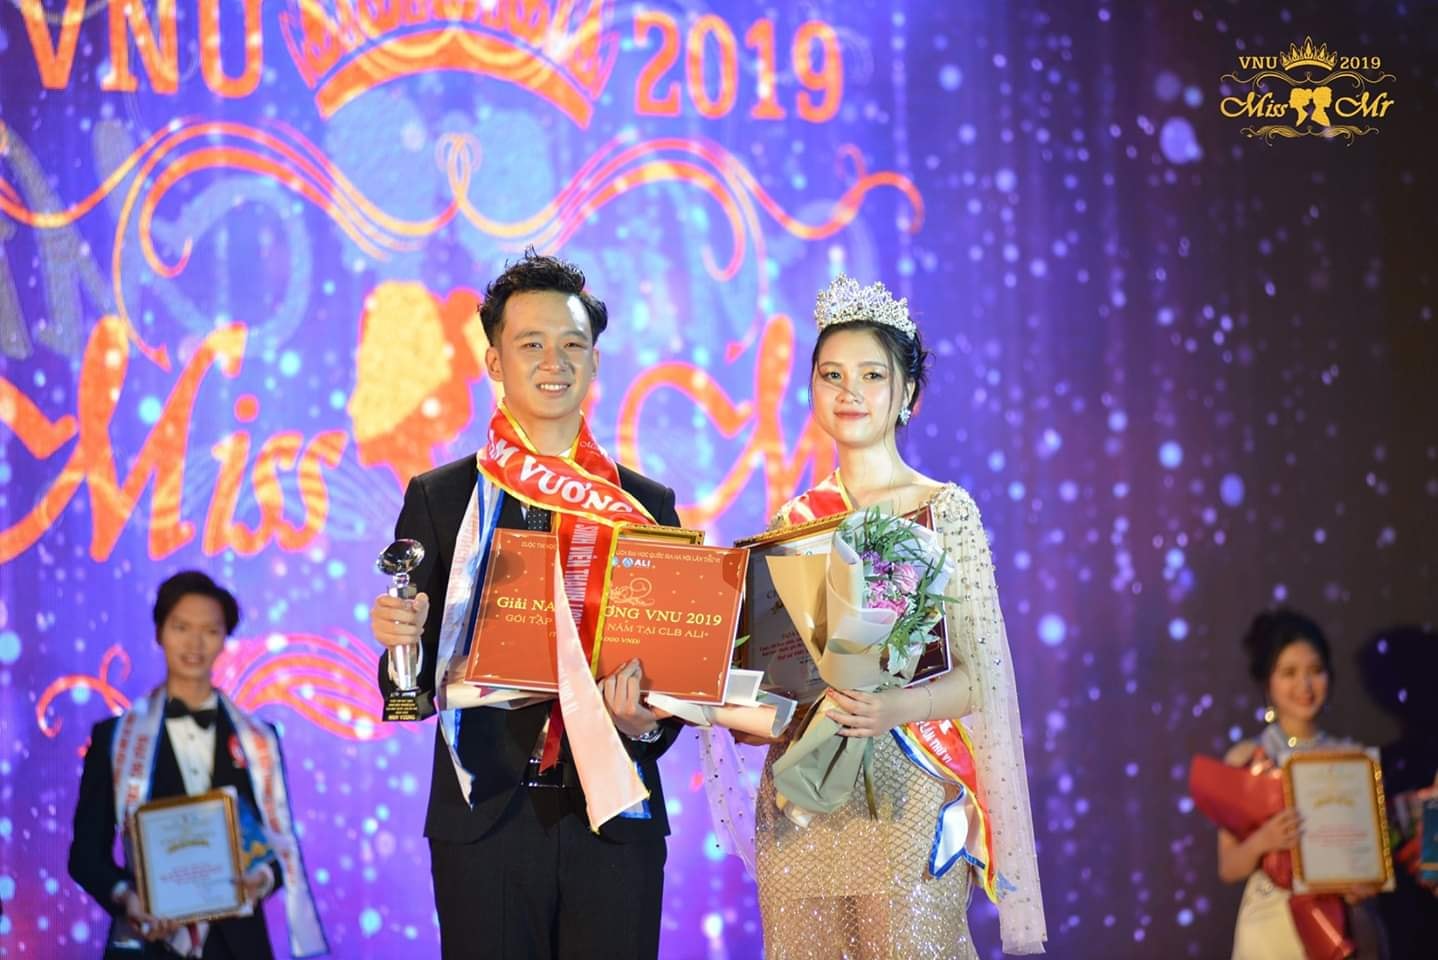 Vũ Trọng Lâm Trường (Viện Đào tạo Báo chí và Truyền thông) xuất sắc giành ngôi Nam vương MISS & MR VNU 2019